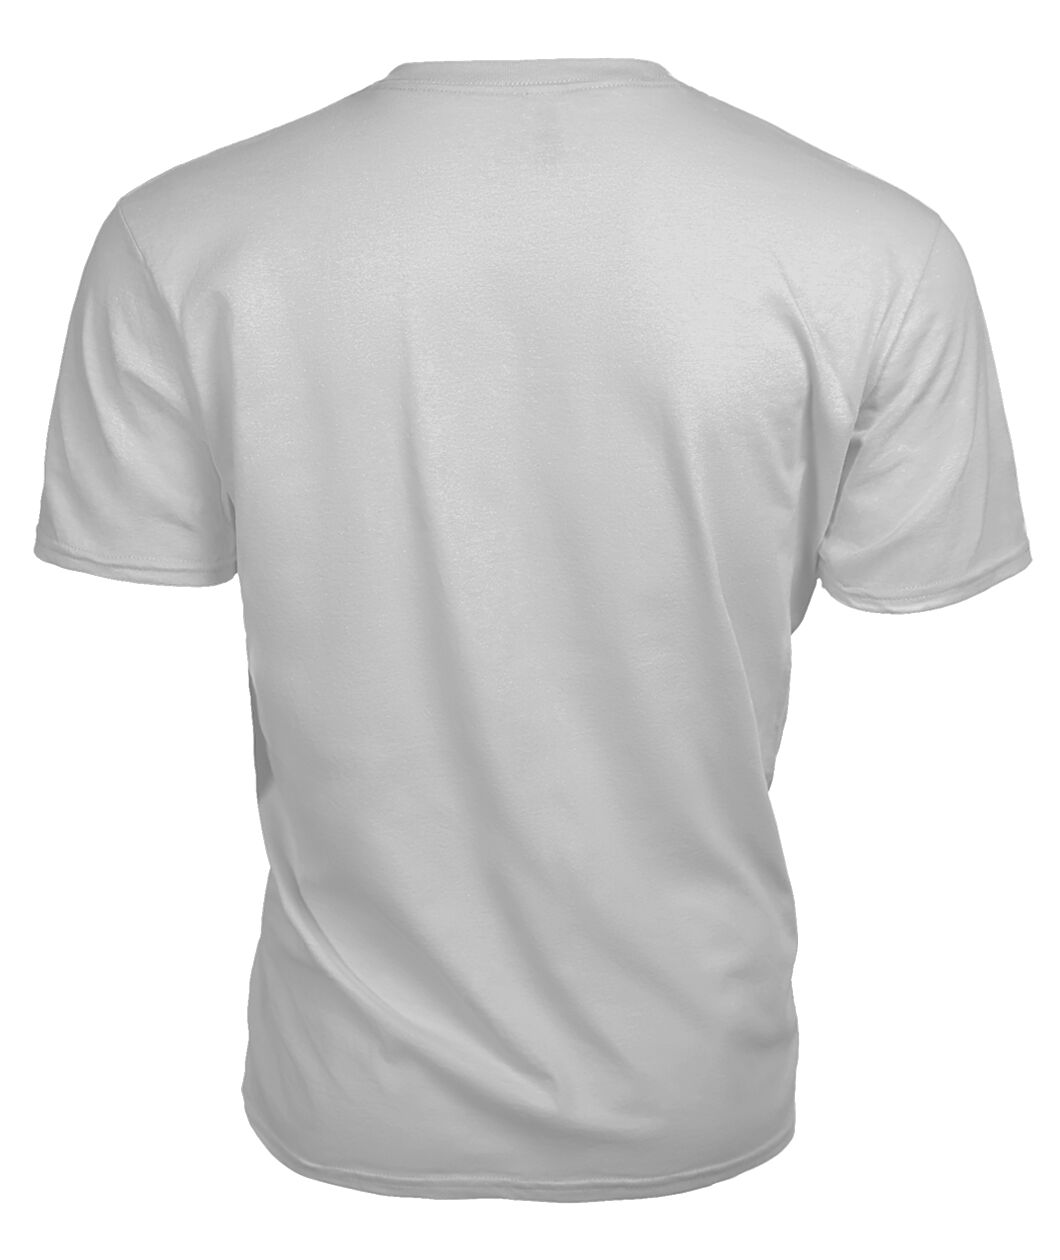 MacLaren Family Tartan - 2D T-shirt